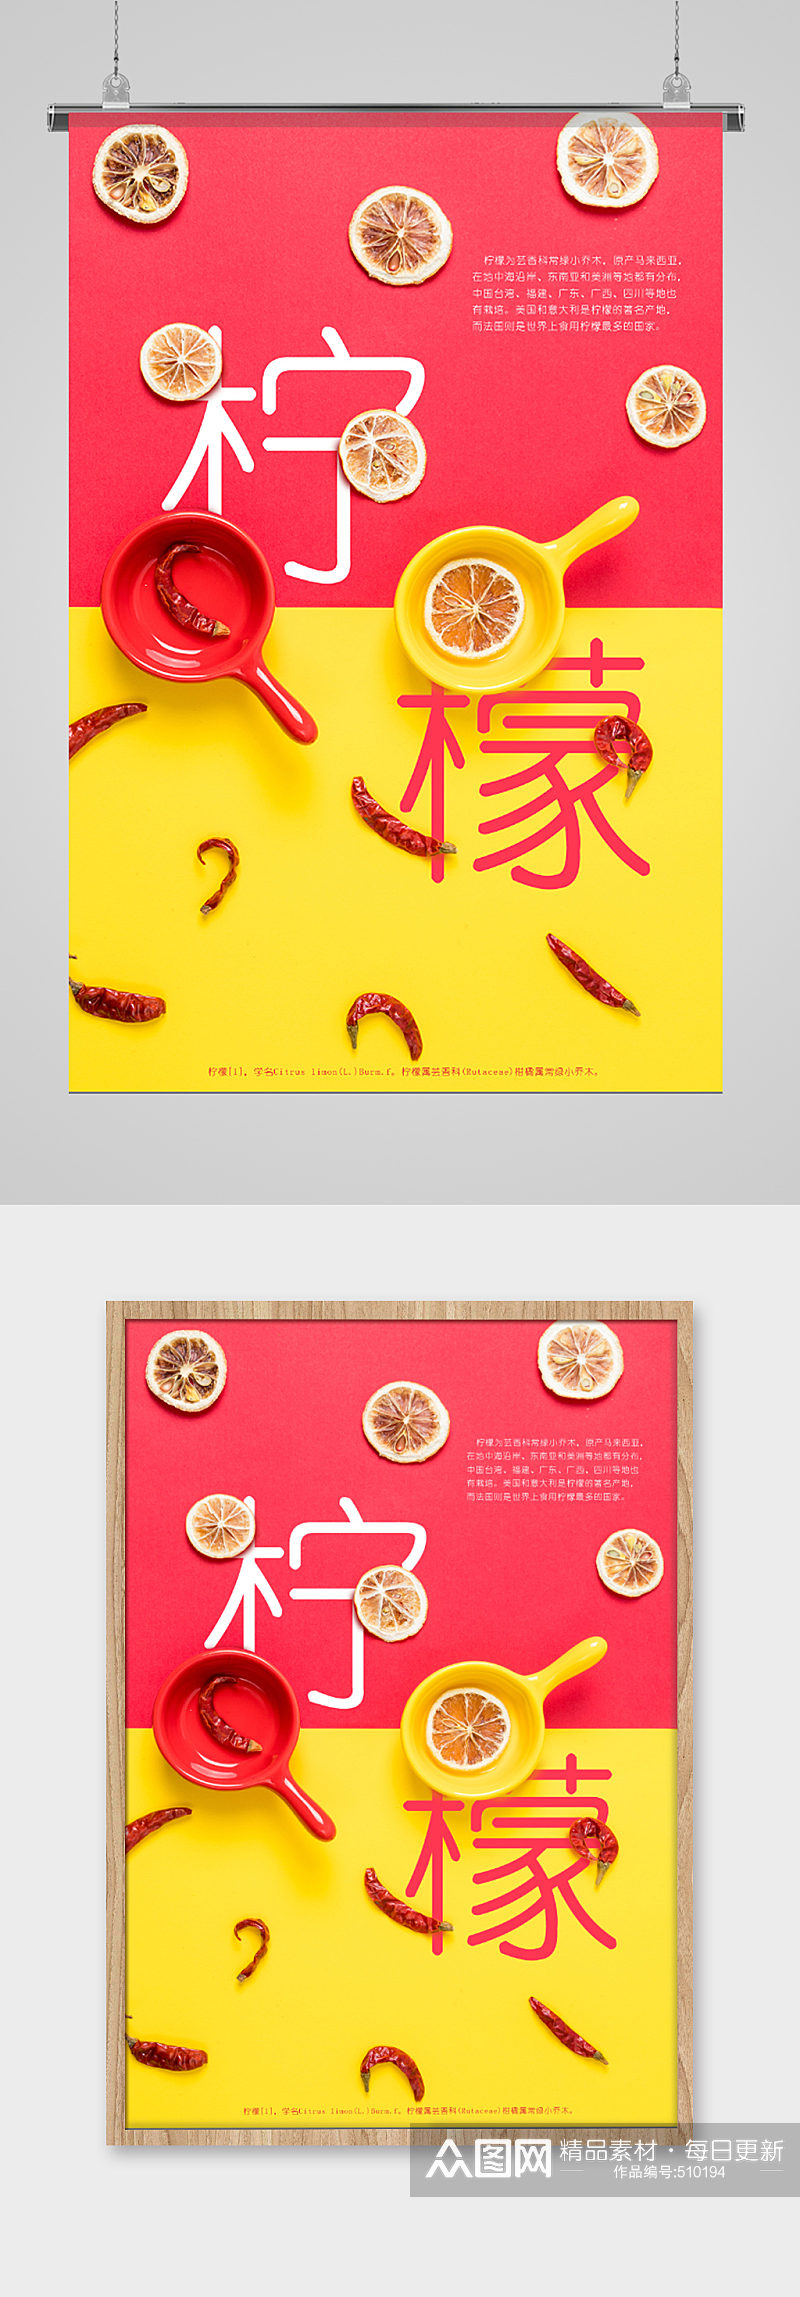 柠檬辣椒时尚创意广告海报素材